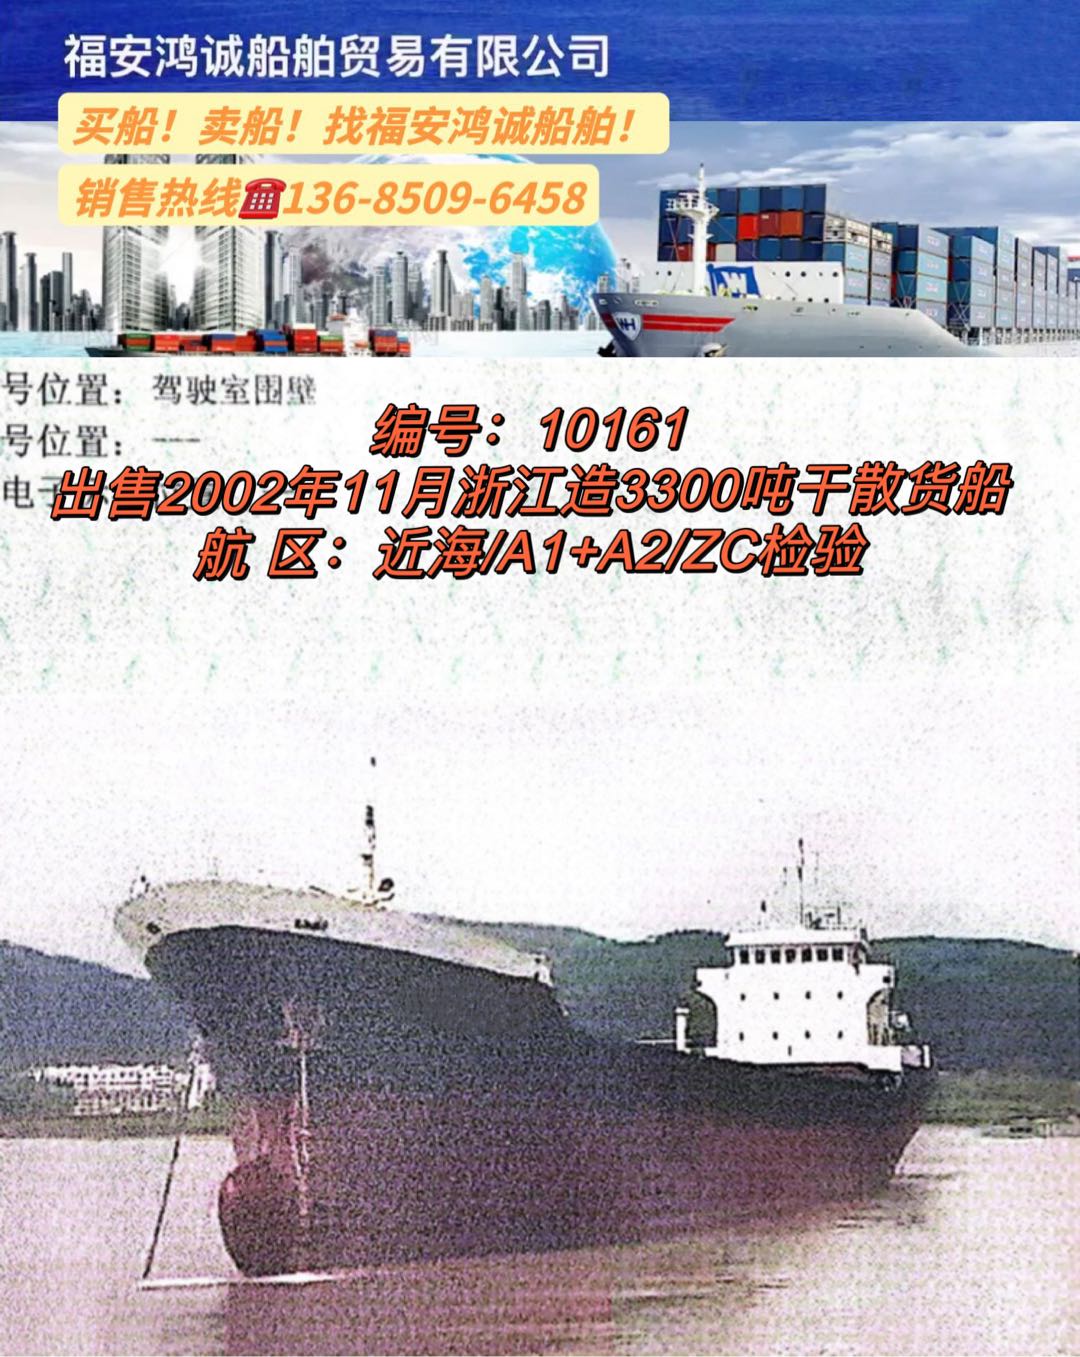 出售02年3300吨干散货船